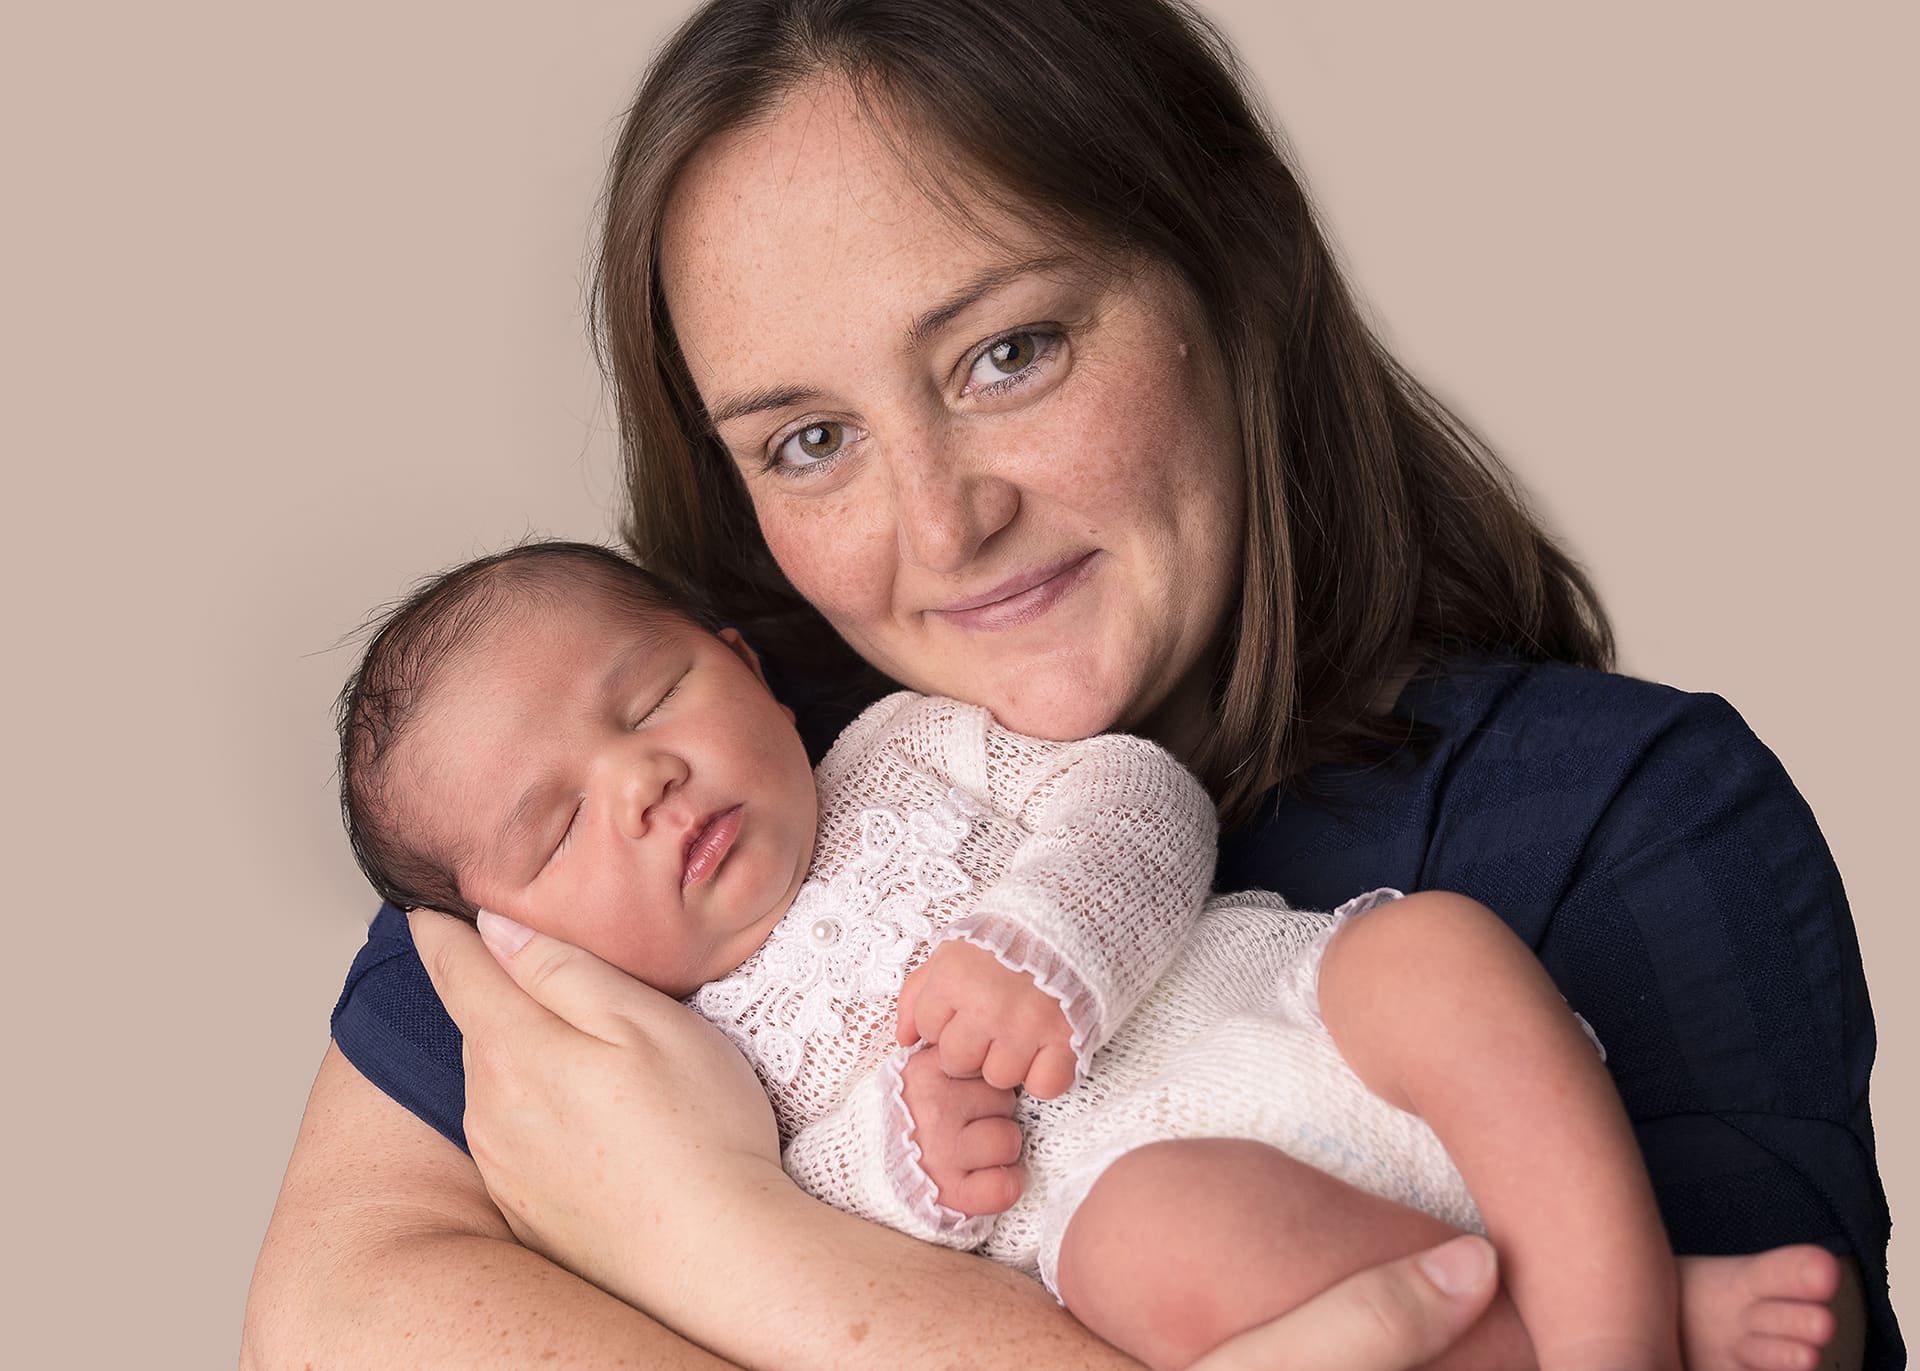 Northampton newborn photography mum with daughter